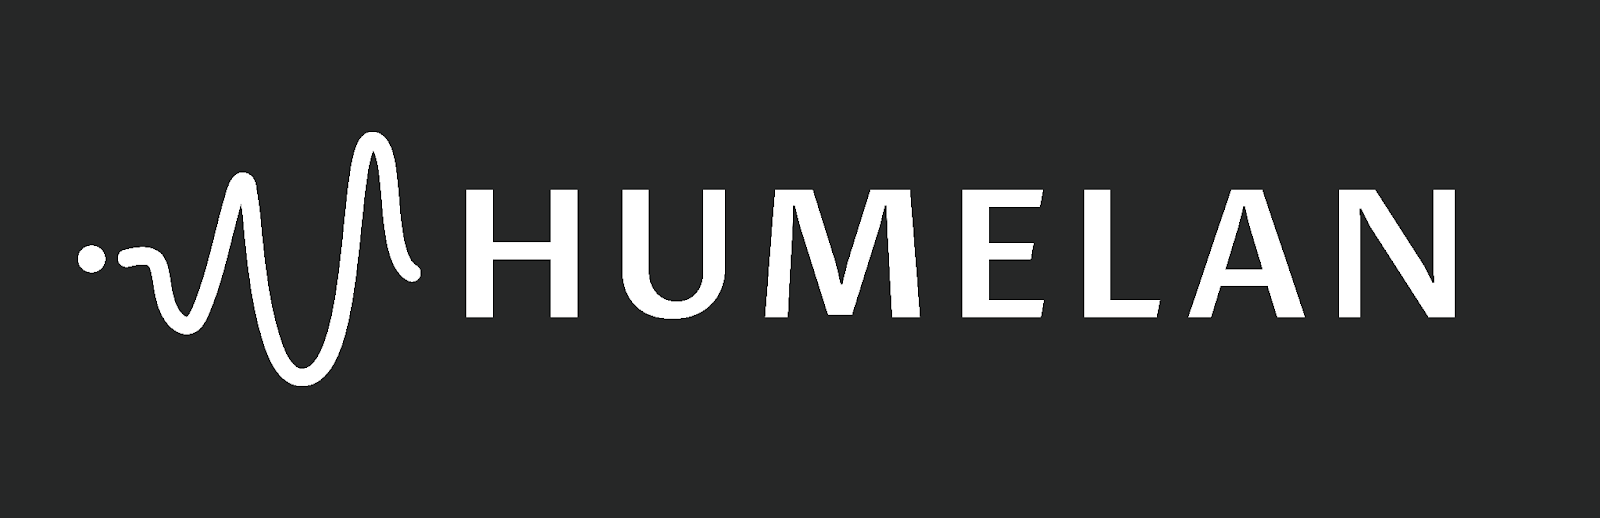 HUMELAN’S KNOWLEDGE HUB